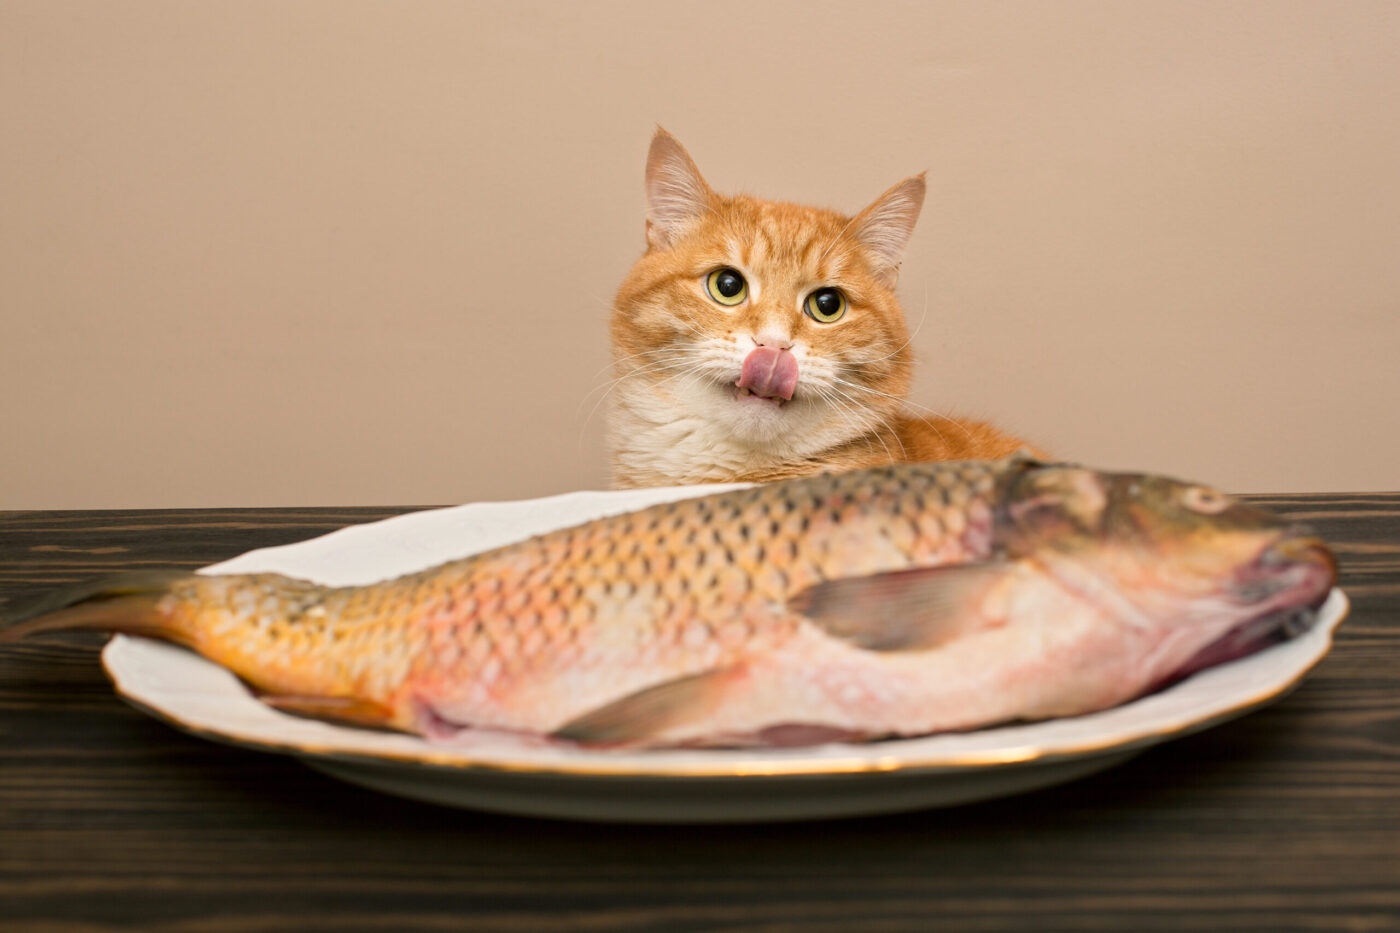 Vörös-fehér macska a tányéron lévő halra éhezik, pénzügyi jog